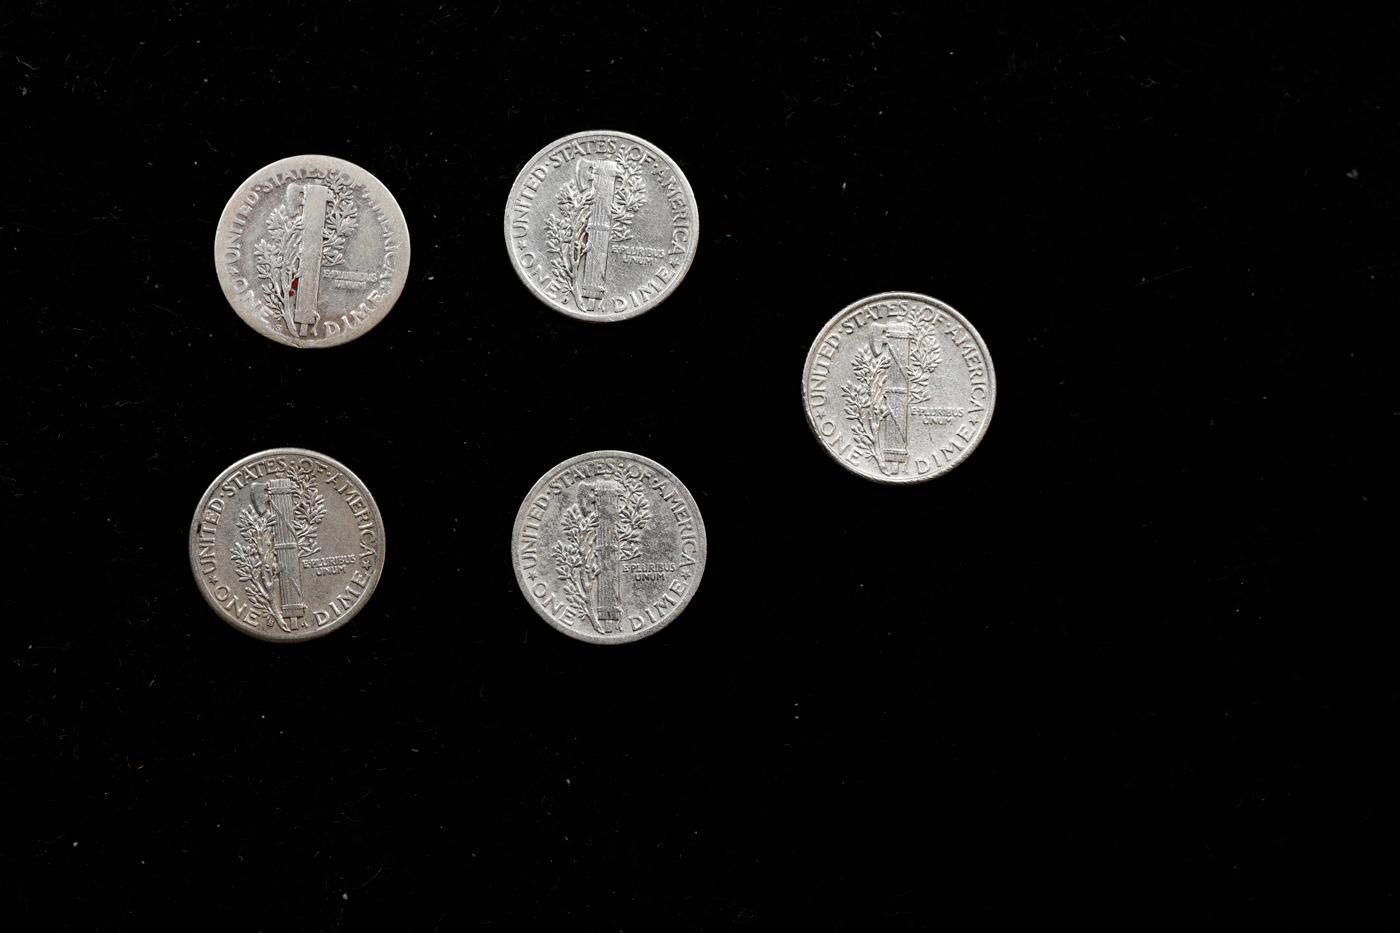 Lot of Five Coins - 1923-s, 1925-p, 1927-p, 1940-d, 1916-s Mercury Dime 10c Grades